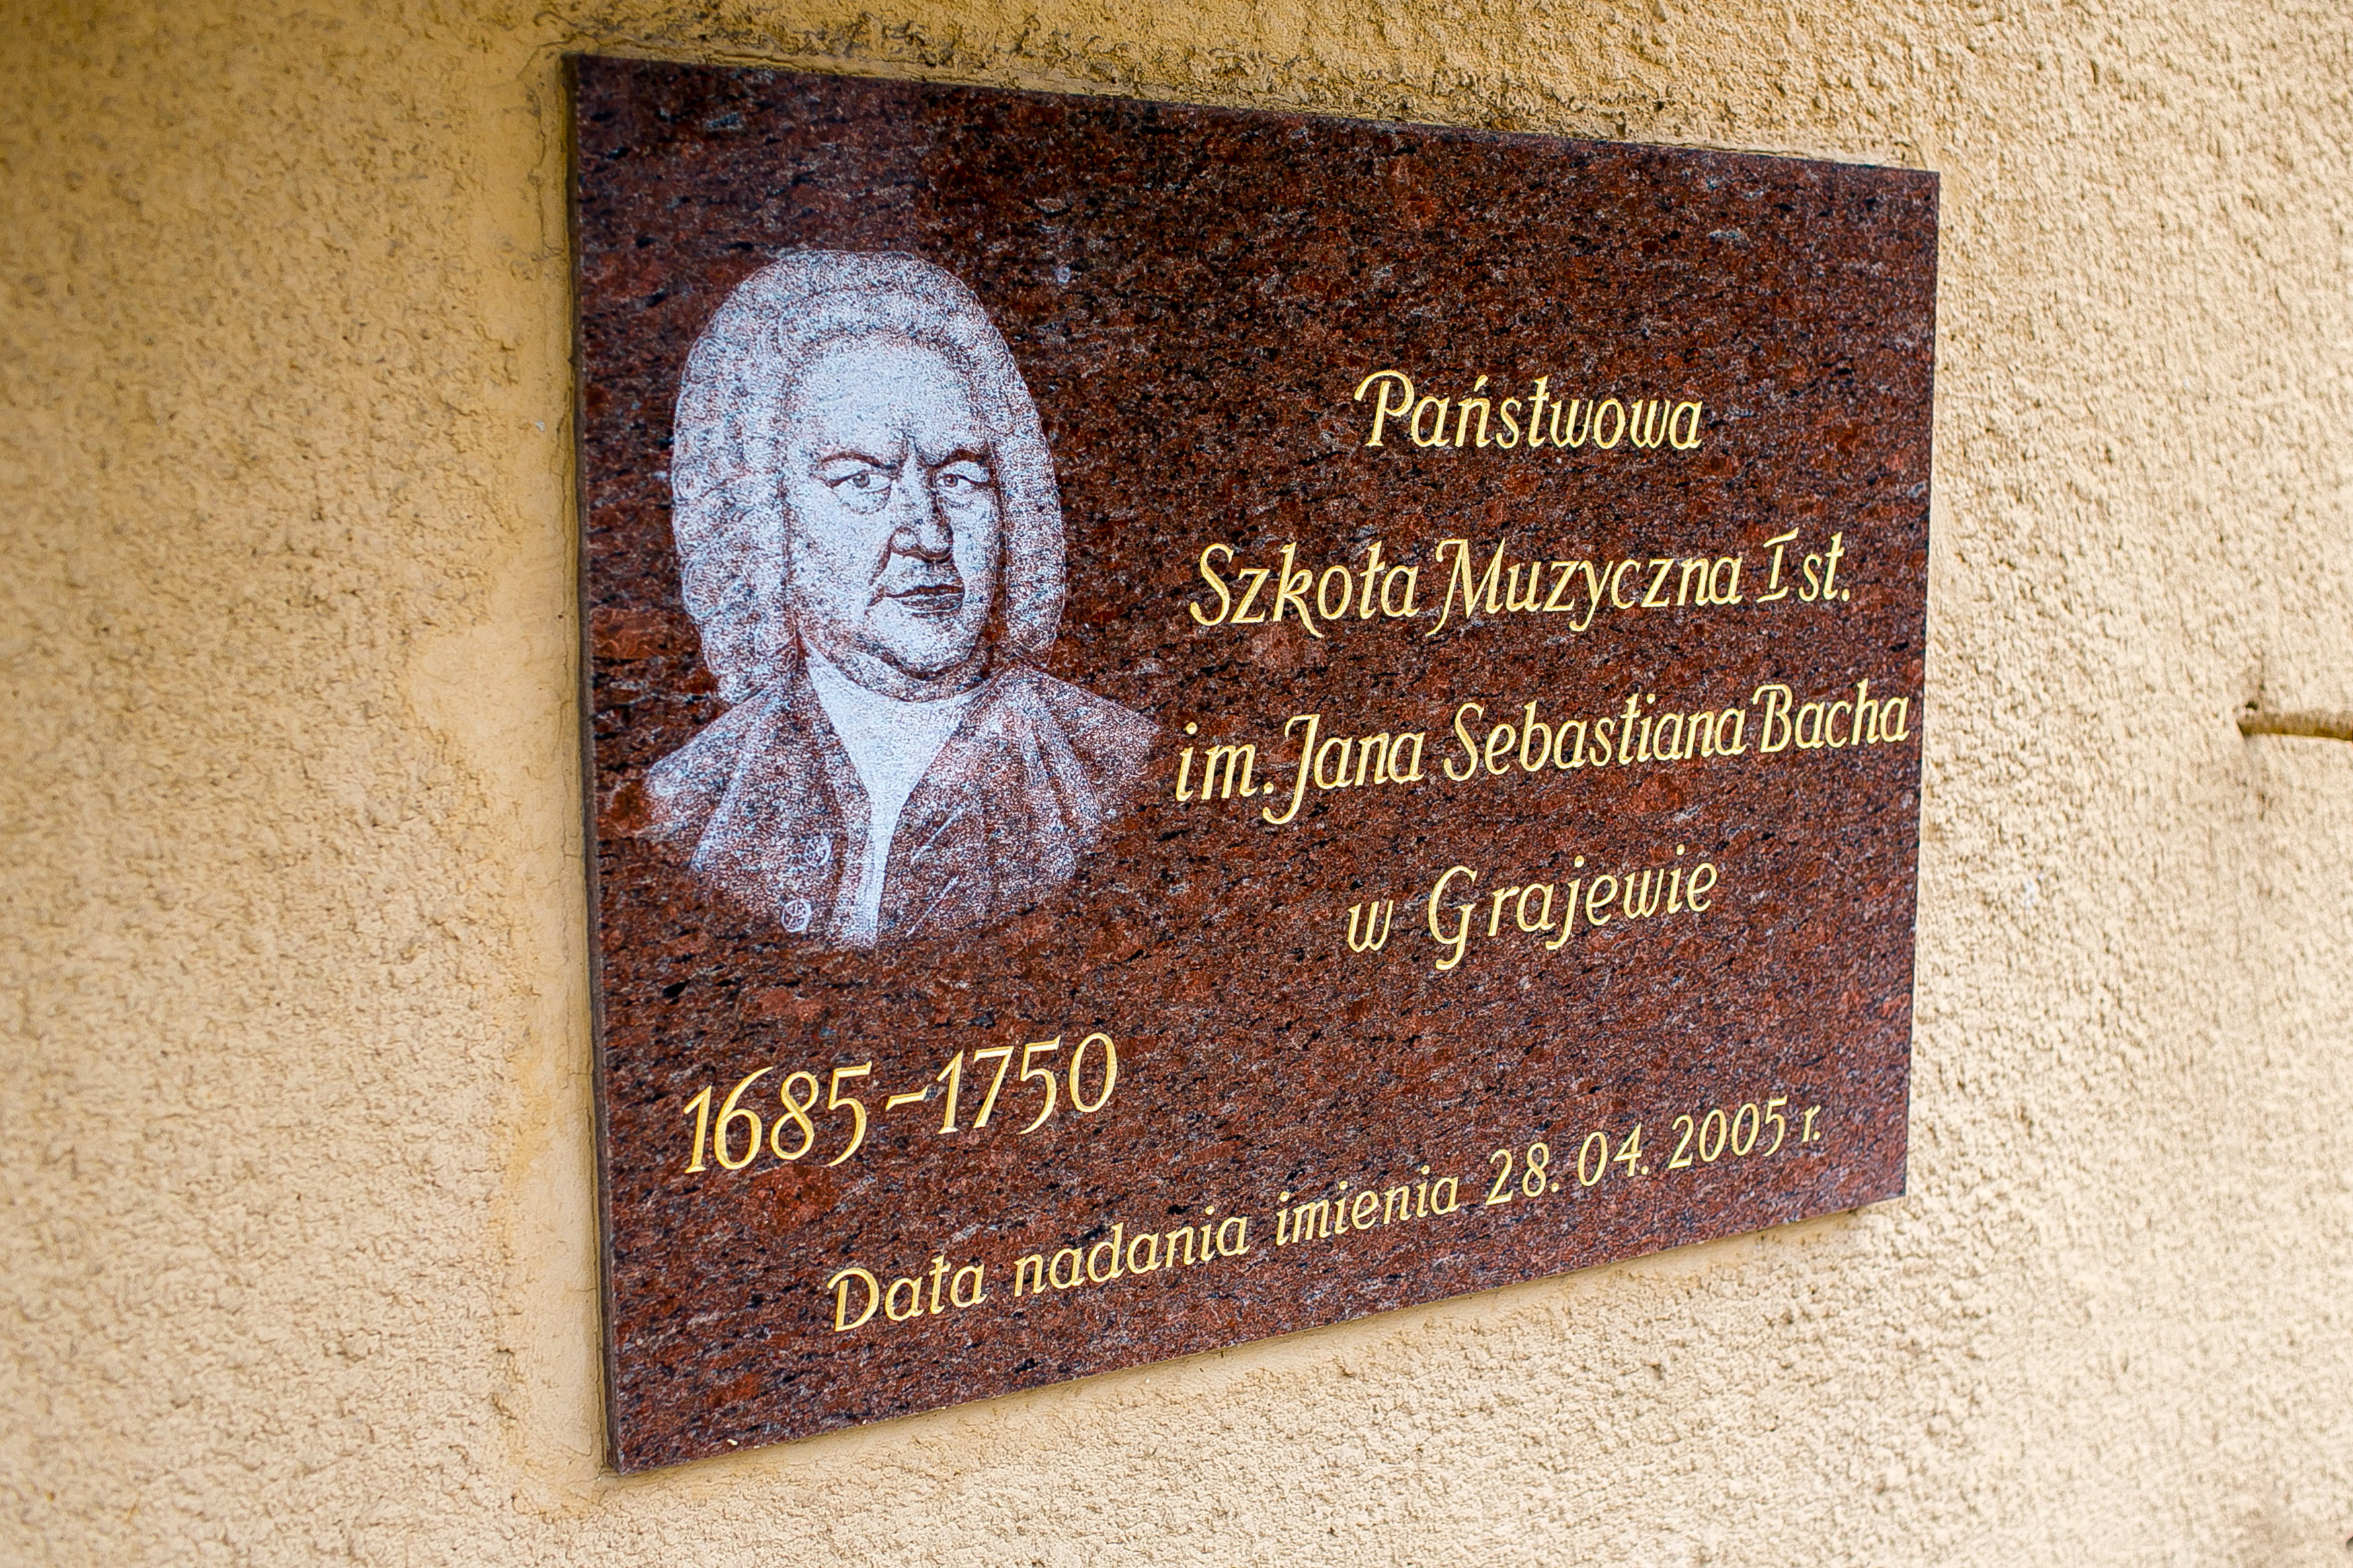 Marmurowa tablica przedstawiająca wizerunek kompozytora Jana Sebastiana Bacha z data nadania imienia szkole oraz tekstem "Państwowa Szkoła Muzyczna I st. im. Jana Sebastiana Bacha w Grajewie"